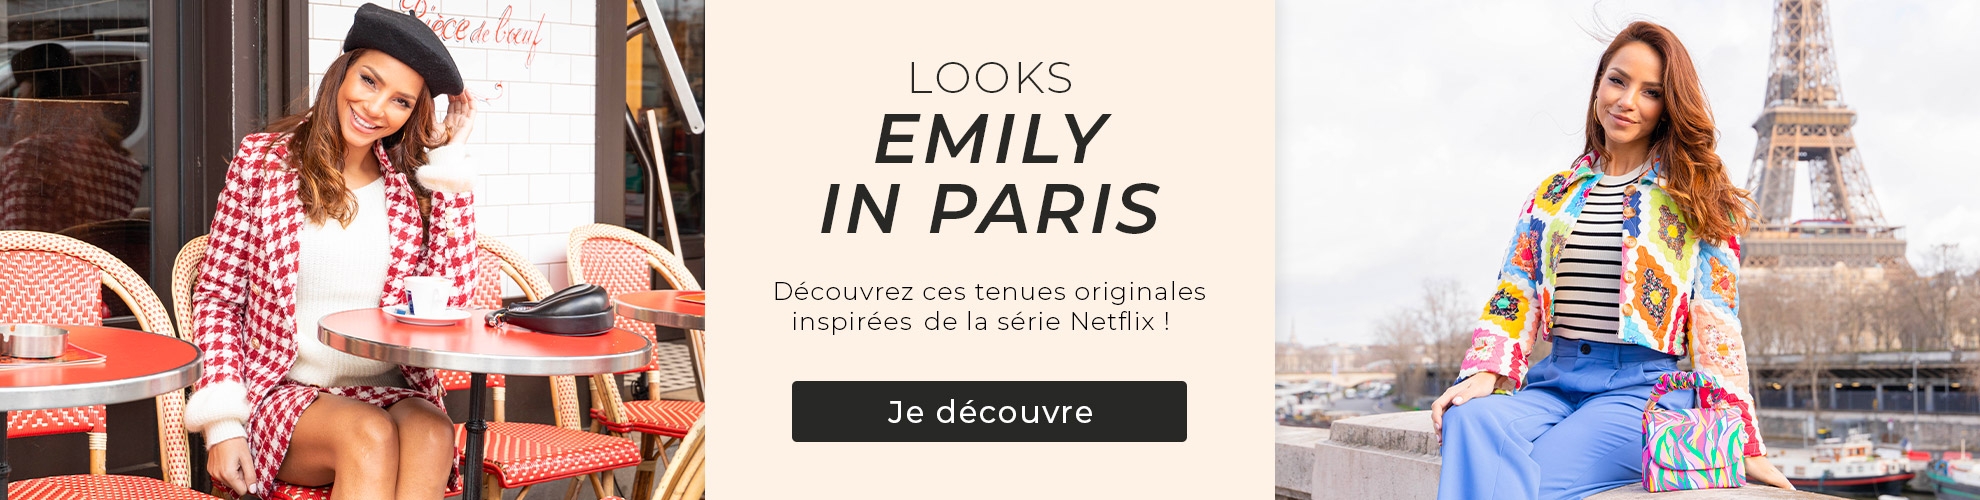 Grossiste en ligne - Emily in Paris